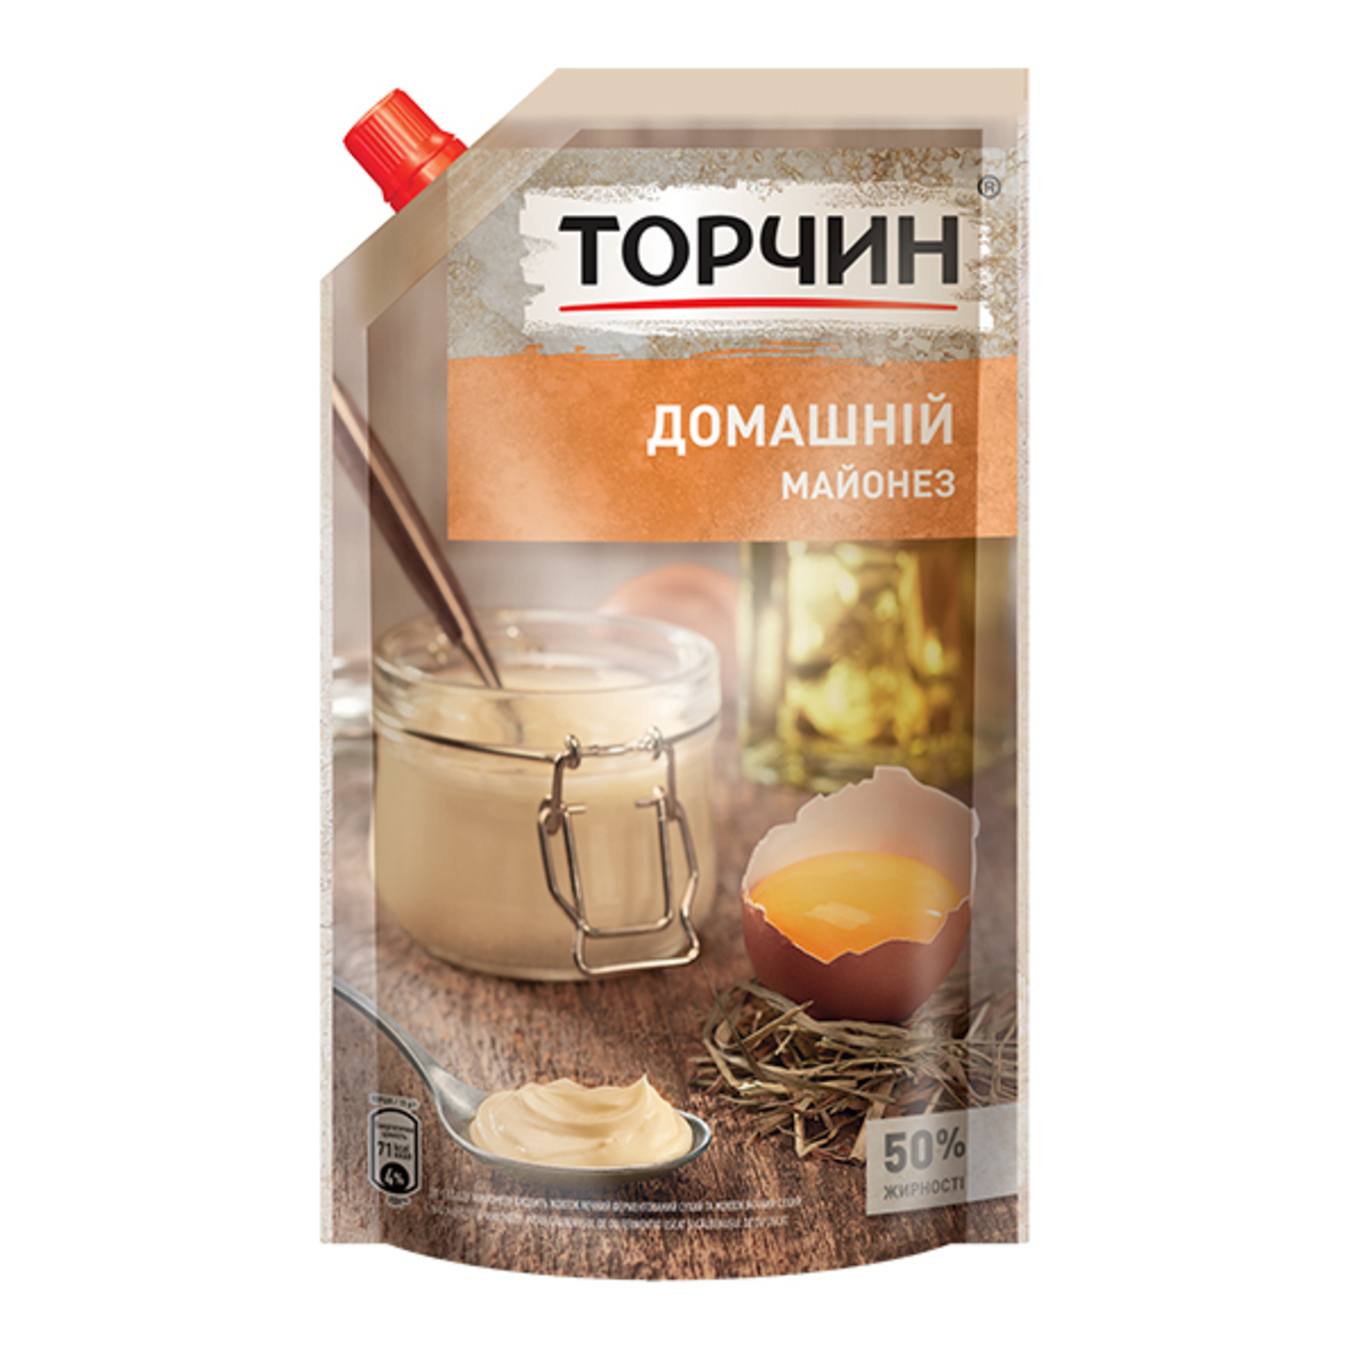 Torchyn Domashniy mayonnaise 50% 580g